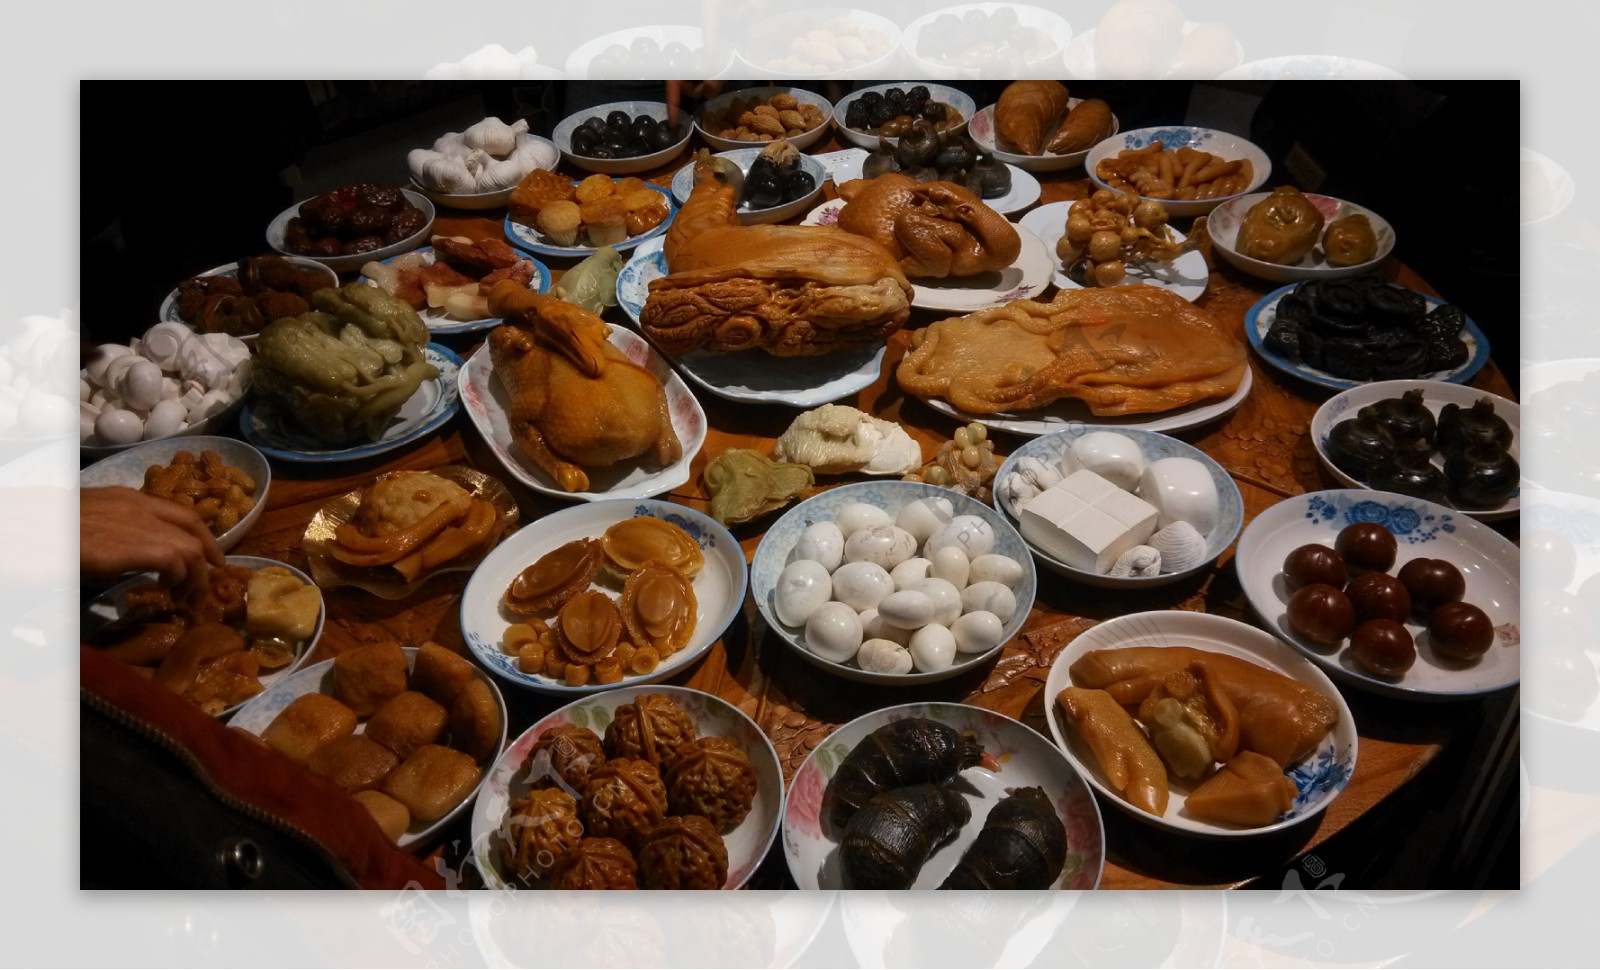 满汉全席@丁瑜家盛宴 | 幸福的我们,又去丁瑜家吃大餐,一下子就摆出十个大菜.还有水果,蛋糕,甜汤,有了这么一位热情又慷… | Flickr